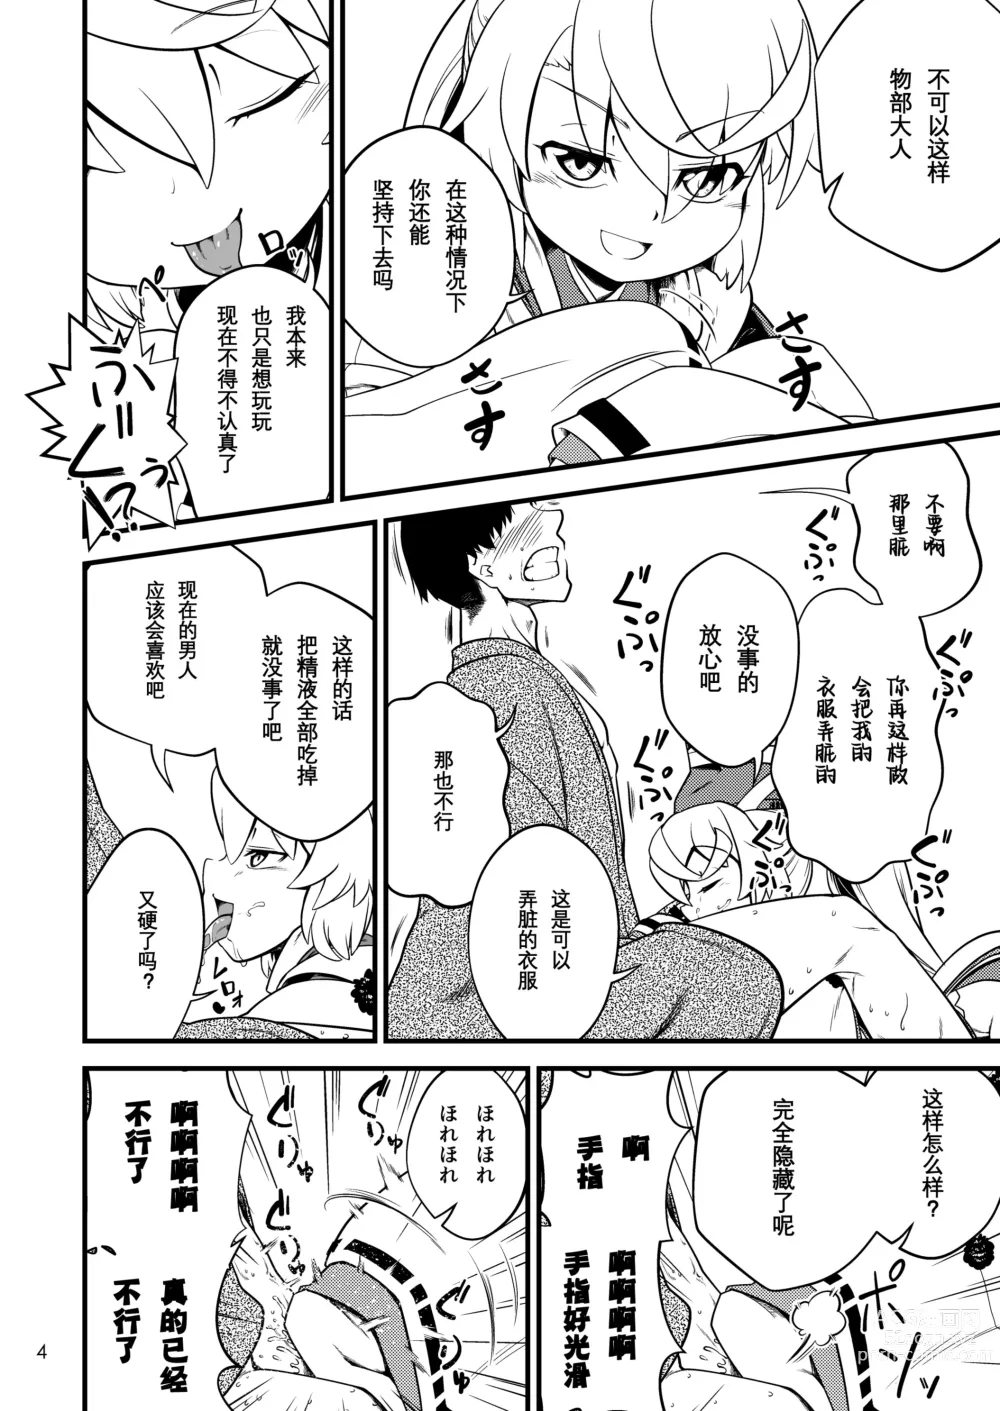 Page 6 of doujinshi Mononobe no Futo no Omotenashi